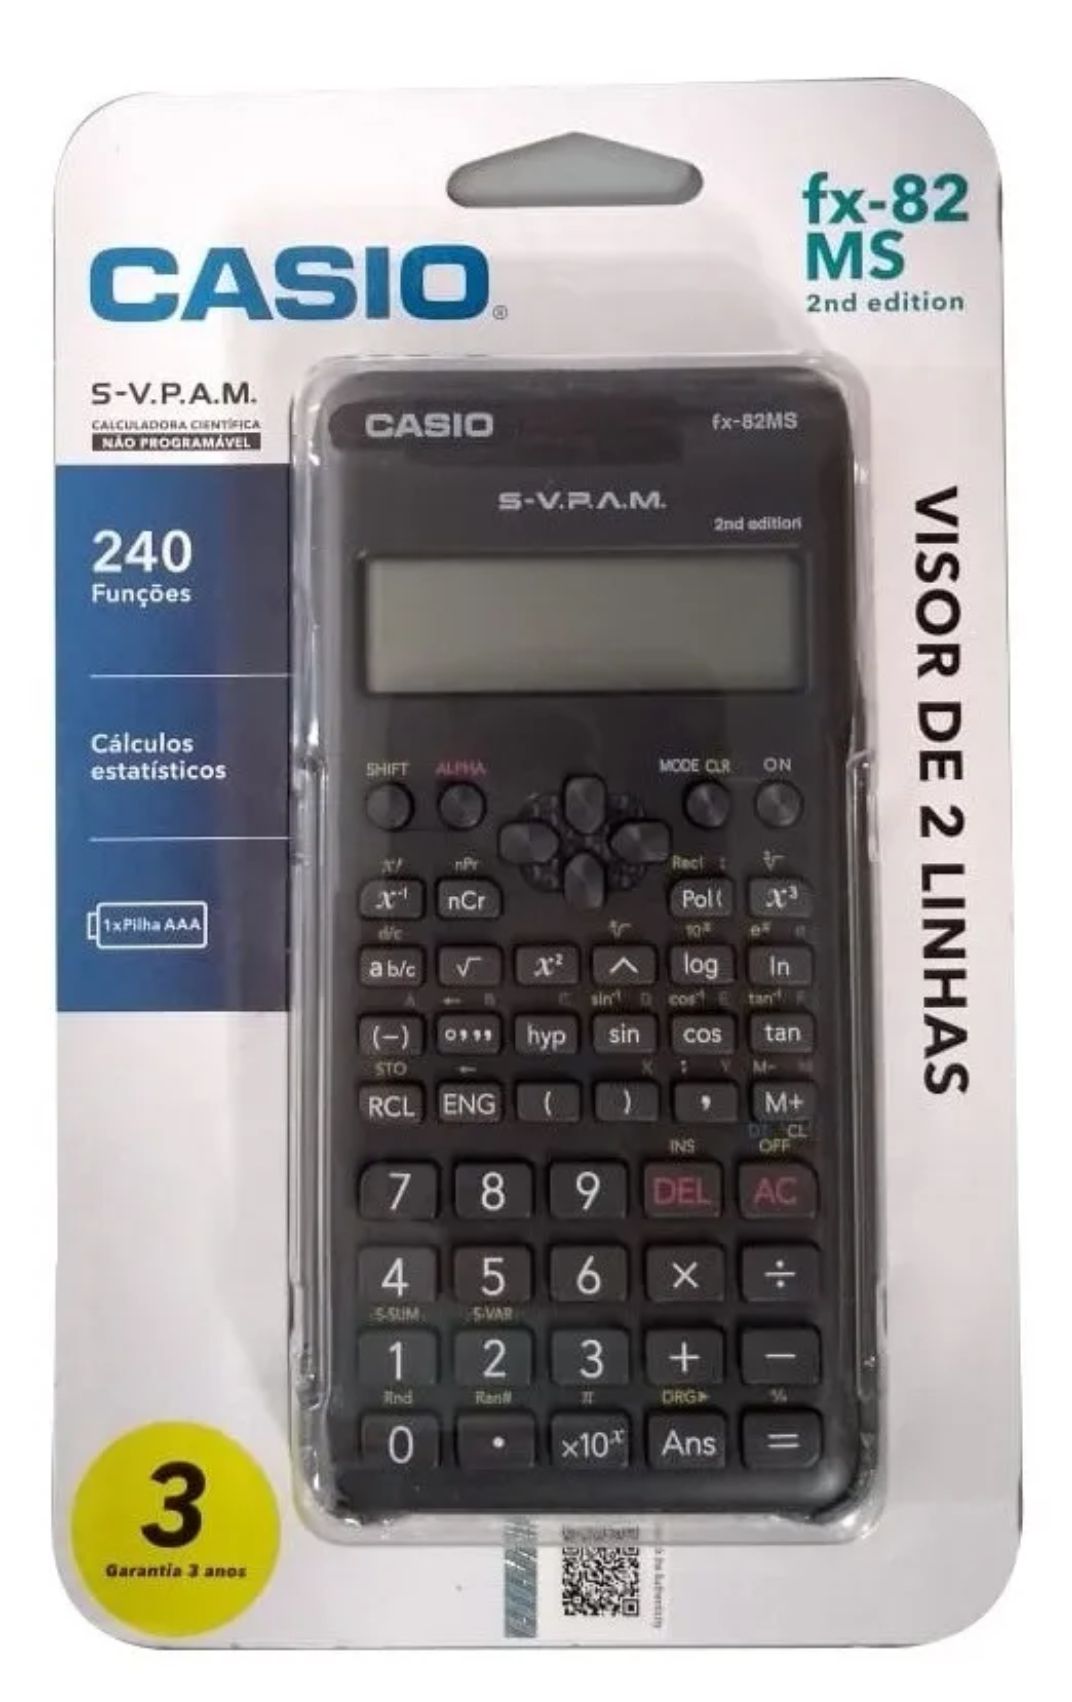 Calculadora Científica Casio Fx-82ms - Manual Português, Magalu Empresas